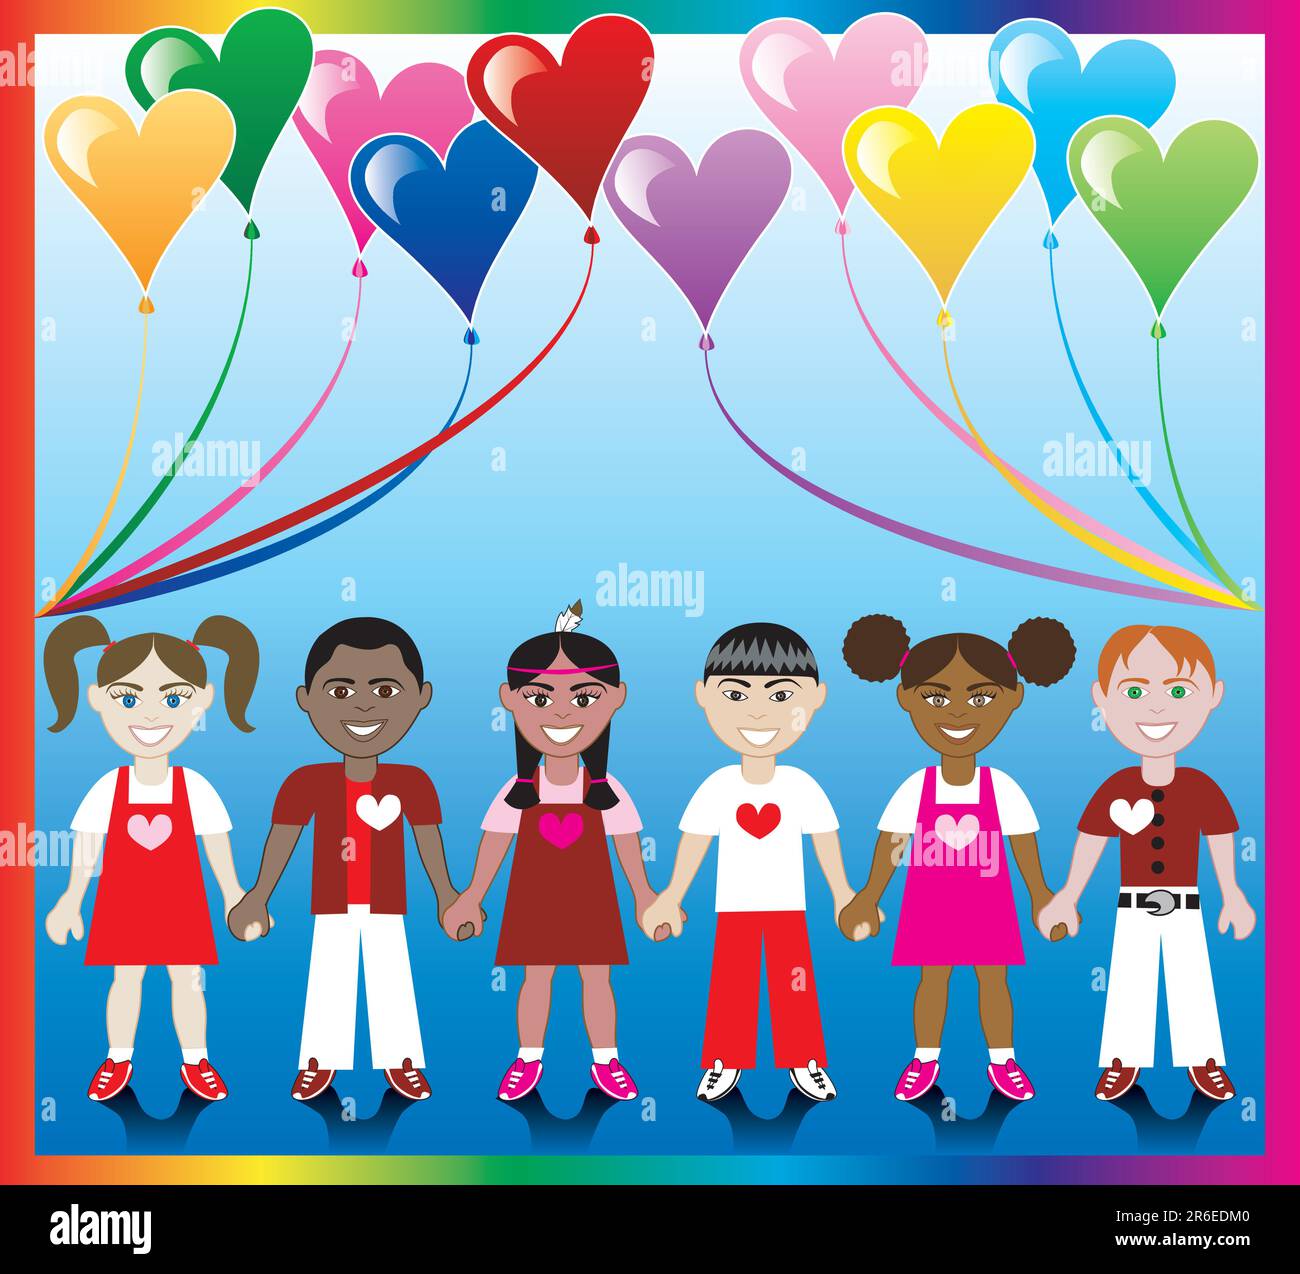 Vektordarstellung von 10 Herzballons mit farbenfrohem Hintergrund und Kindern, die mit Love Colors und Hearts Hände halten. Stock Vektor